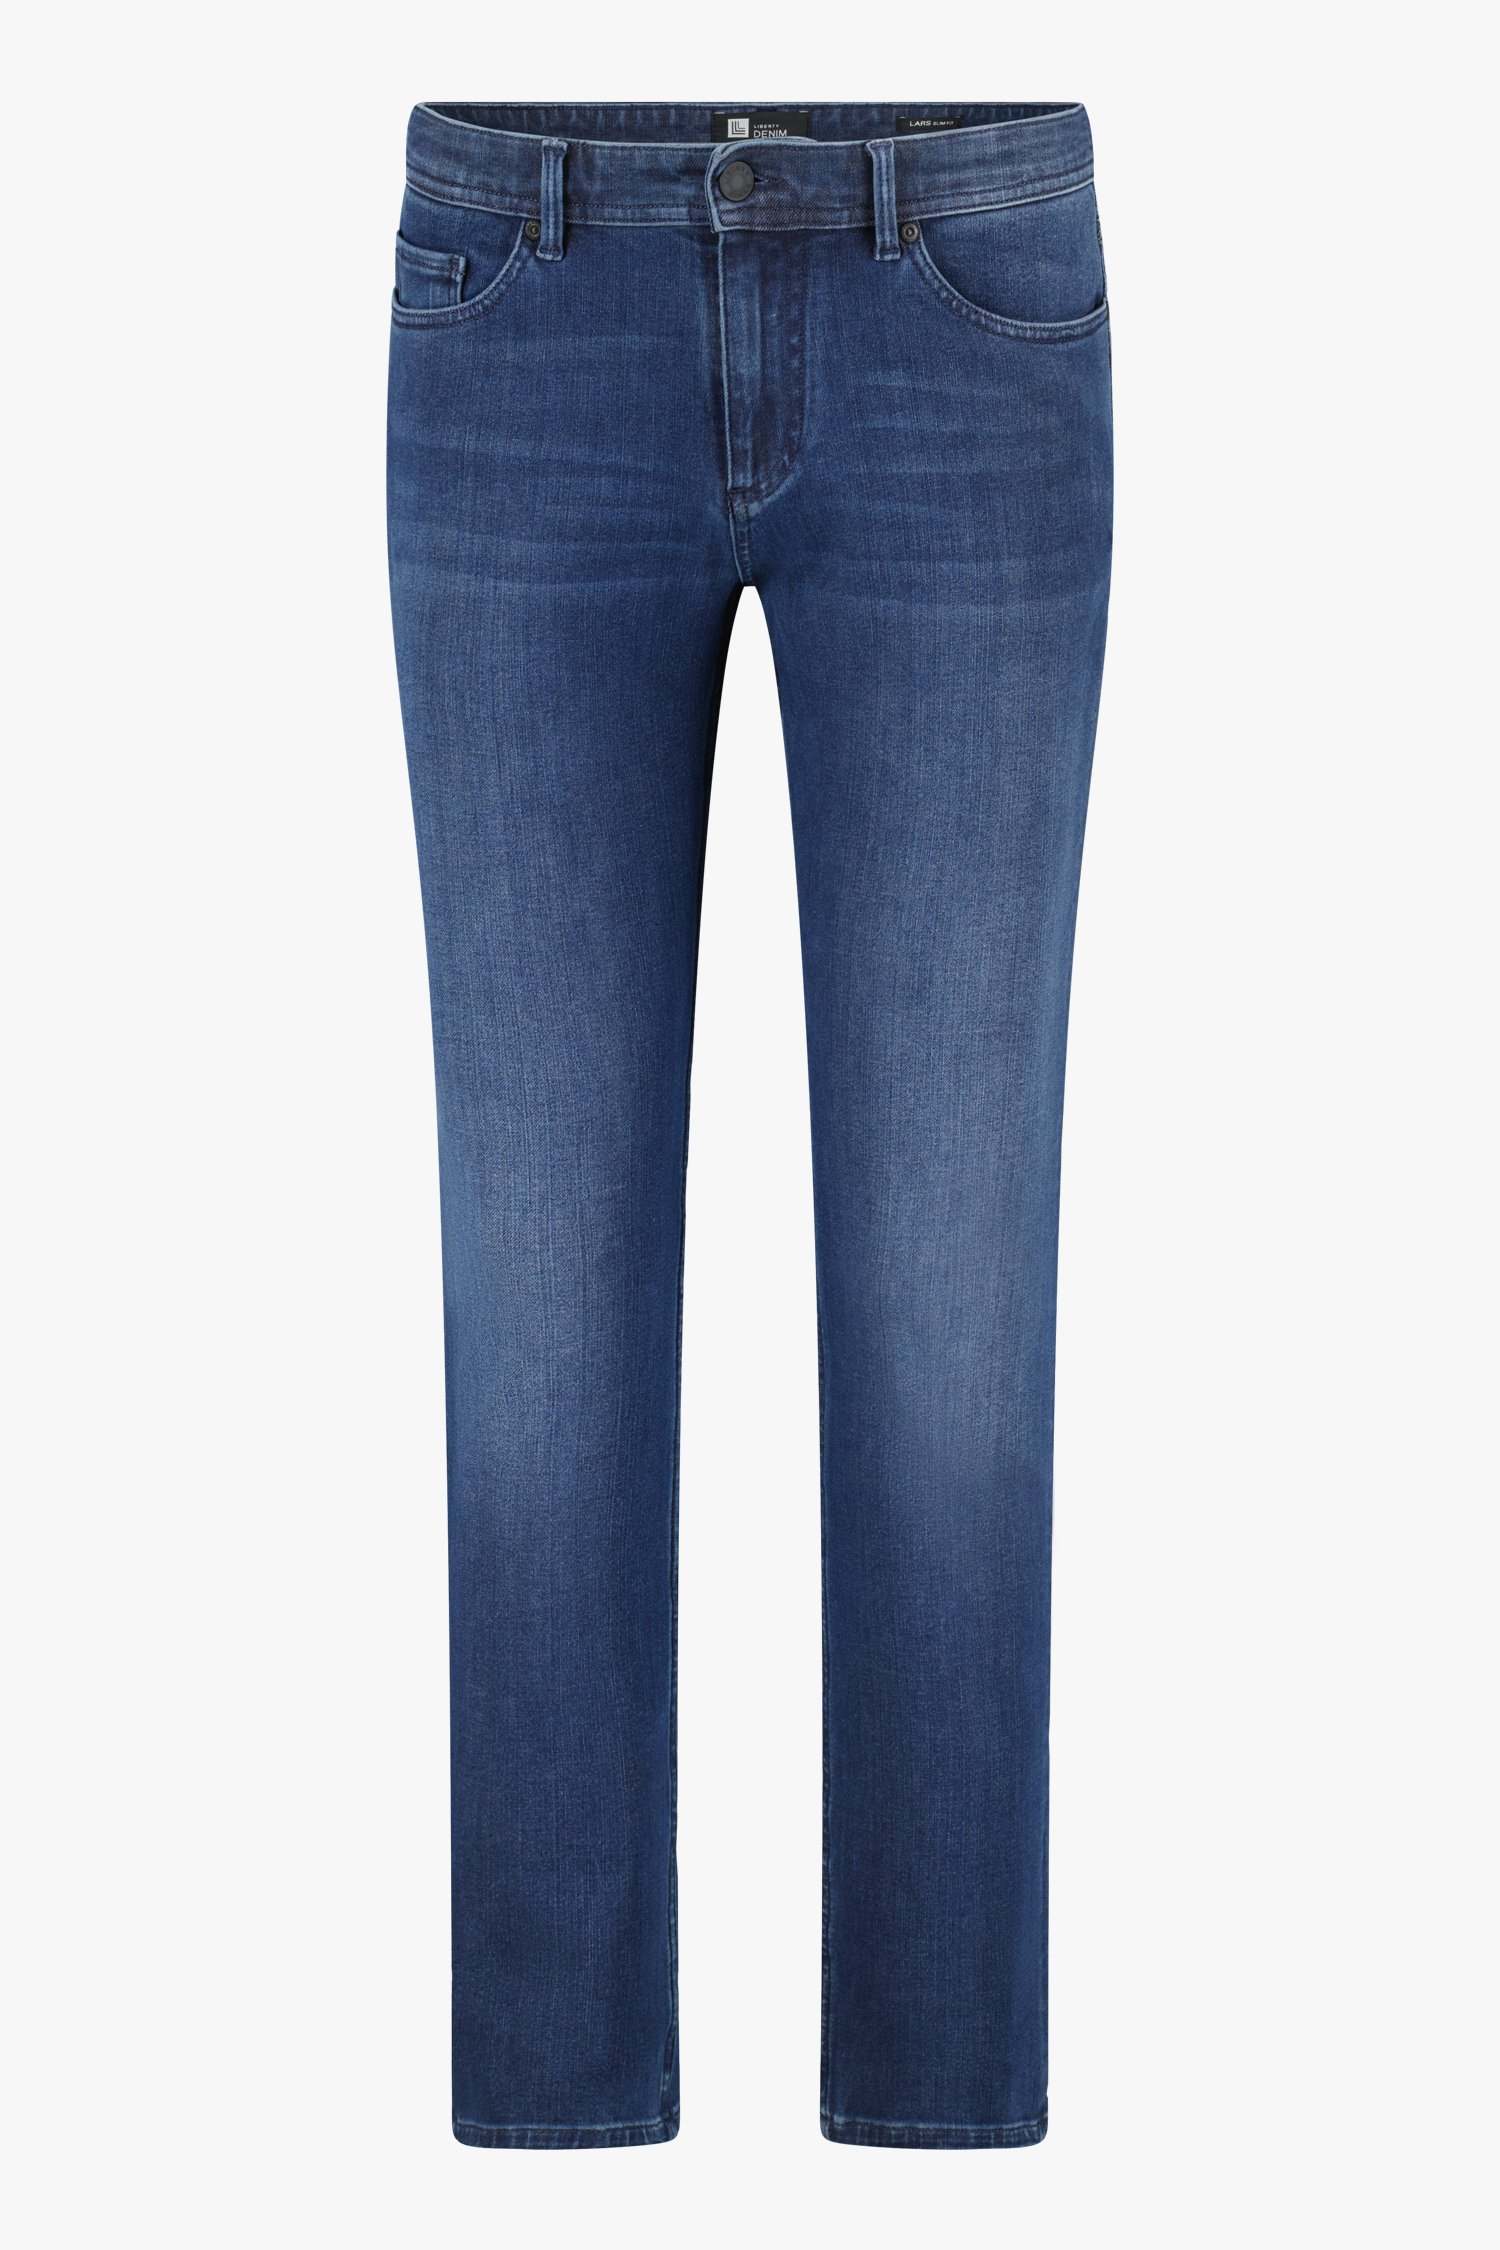 Blauwe jeans - Lars - slim fit - L32 van Liberty Island Denim voor Heren